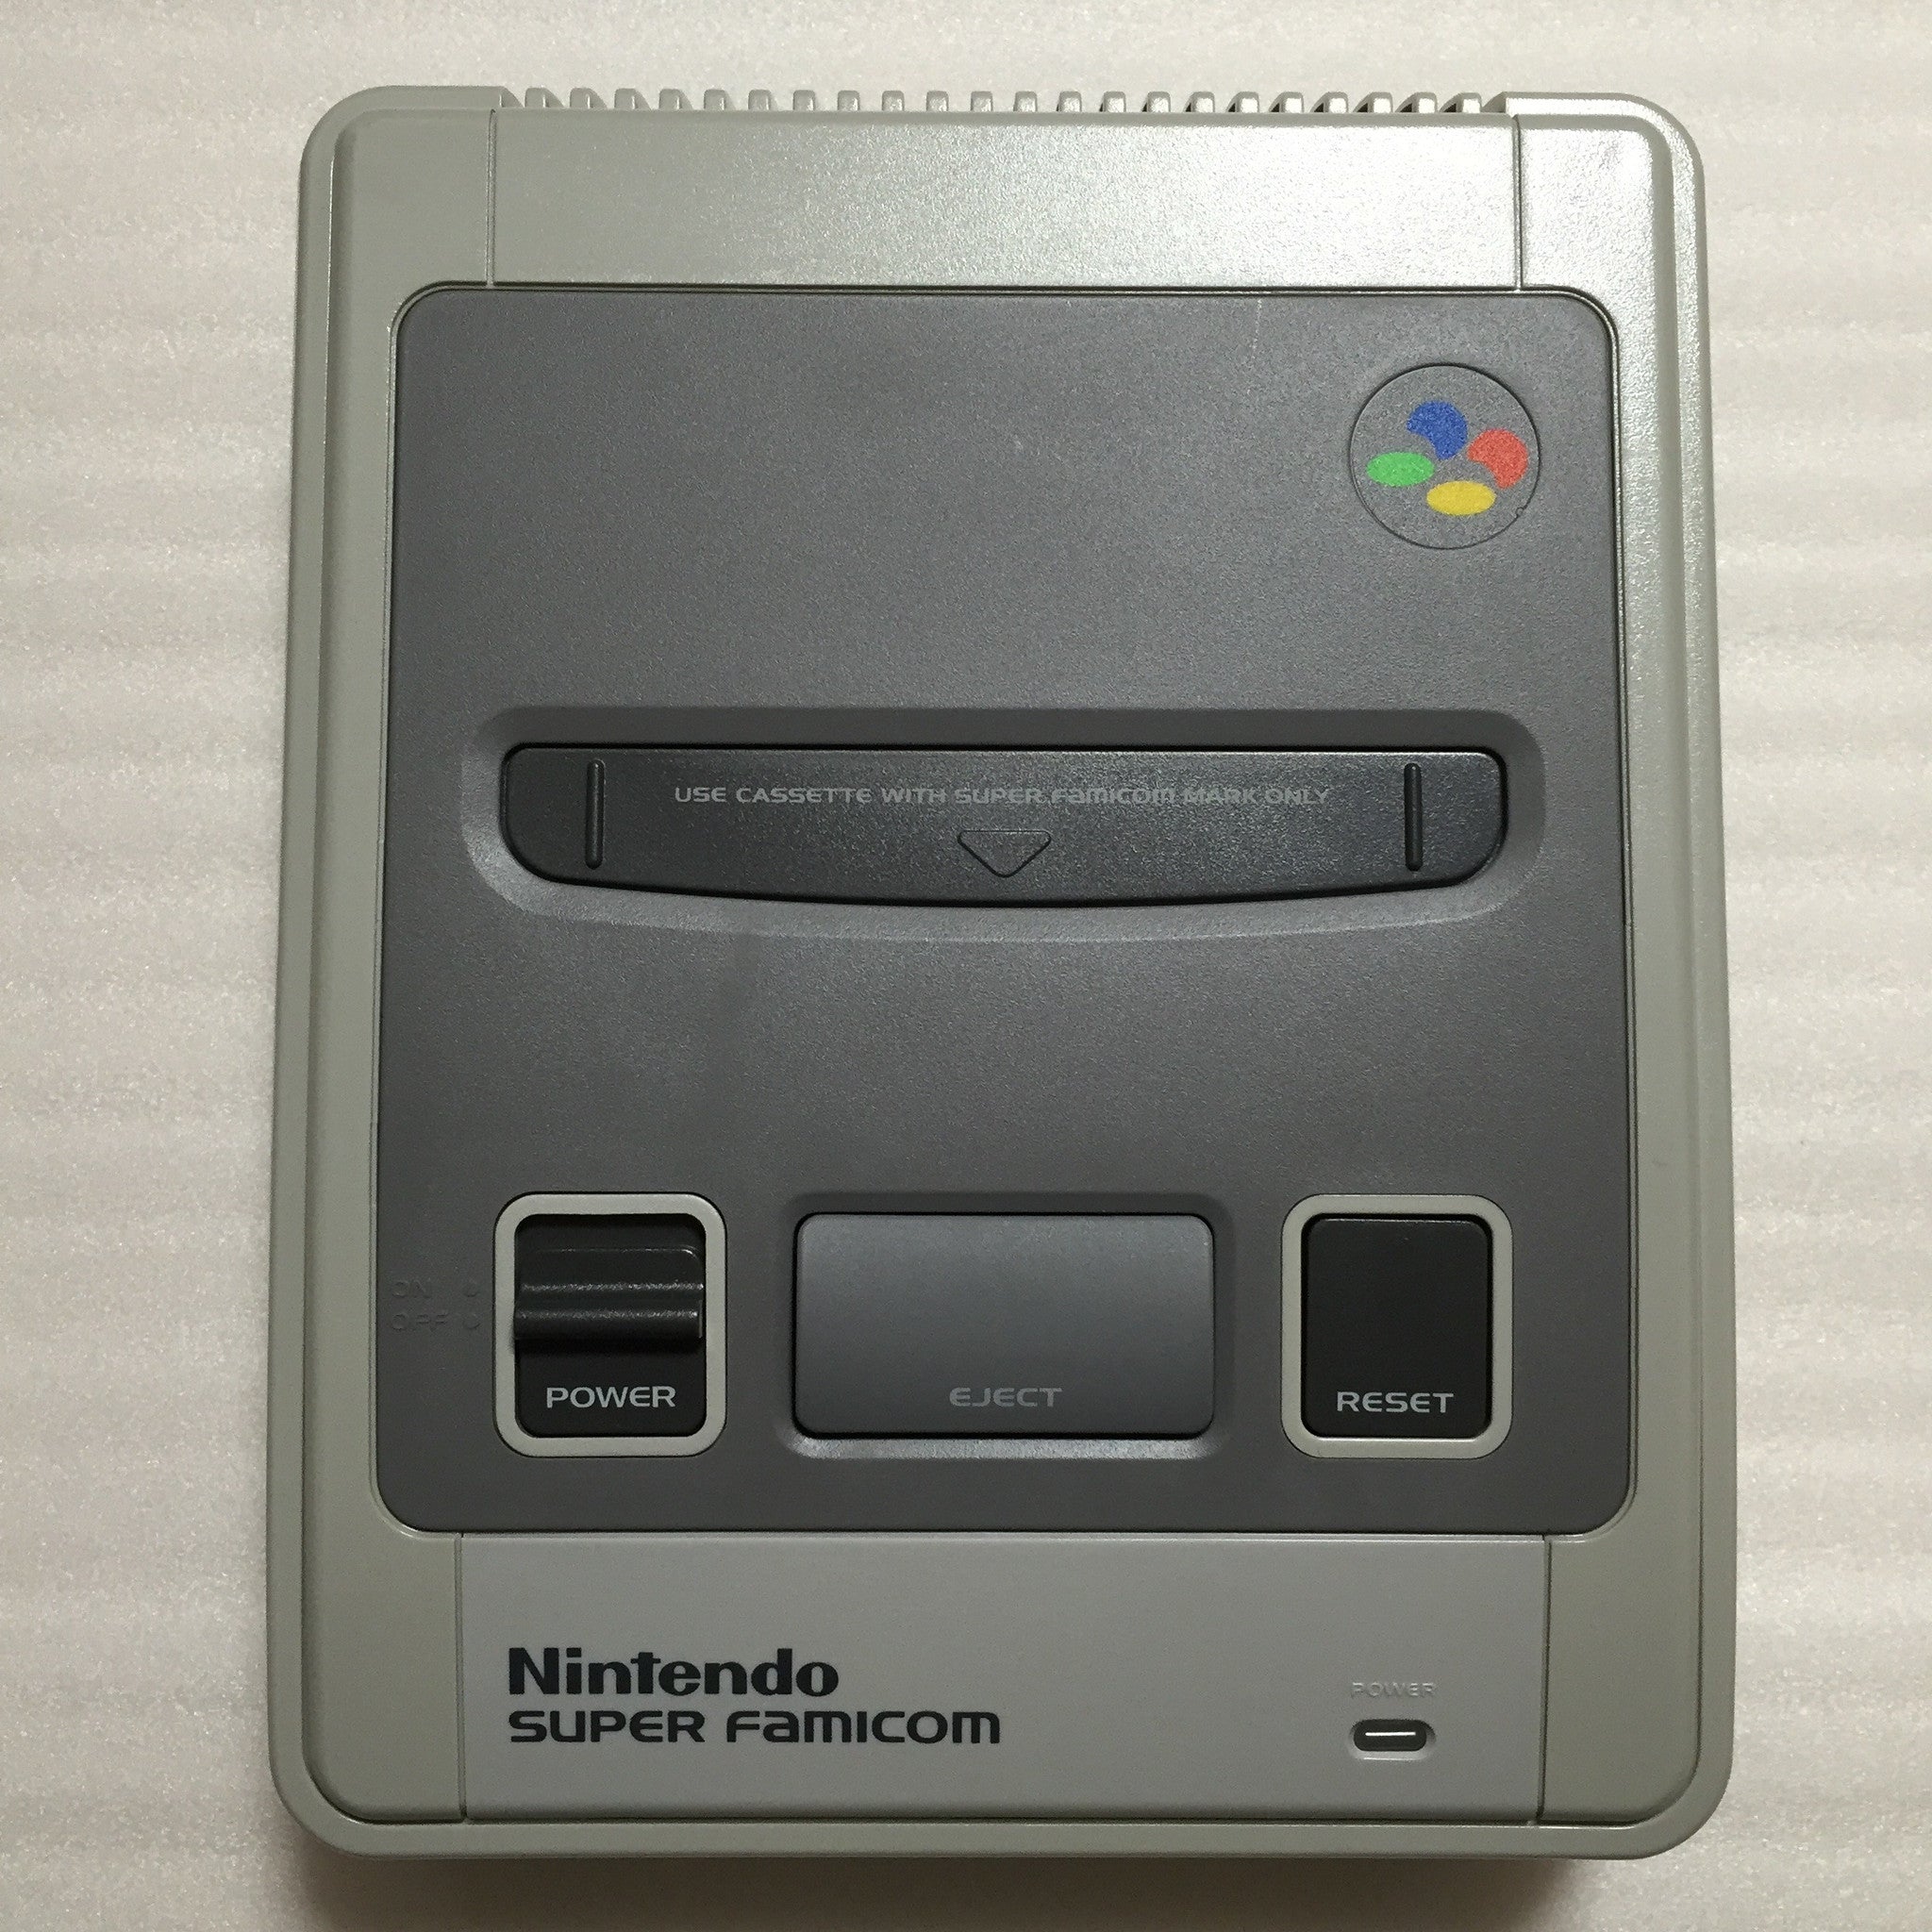 1 CHIP Super Famicom system with 2 games - RetroAsia